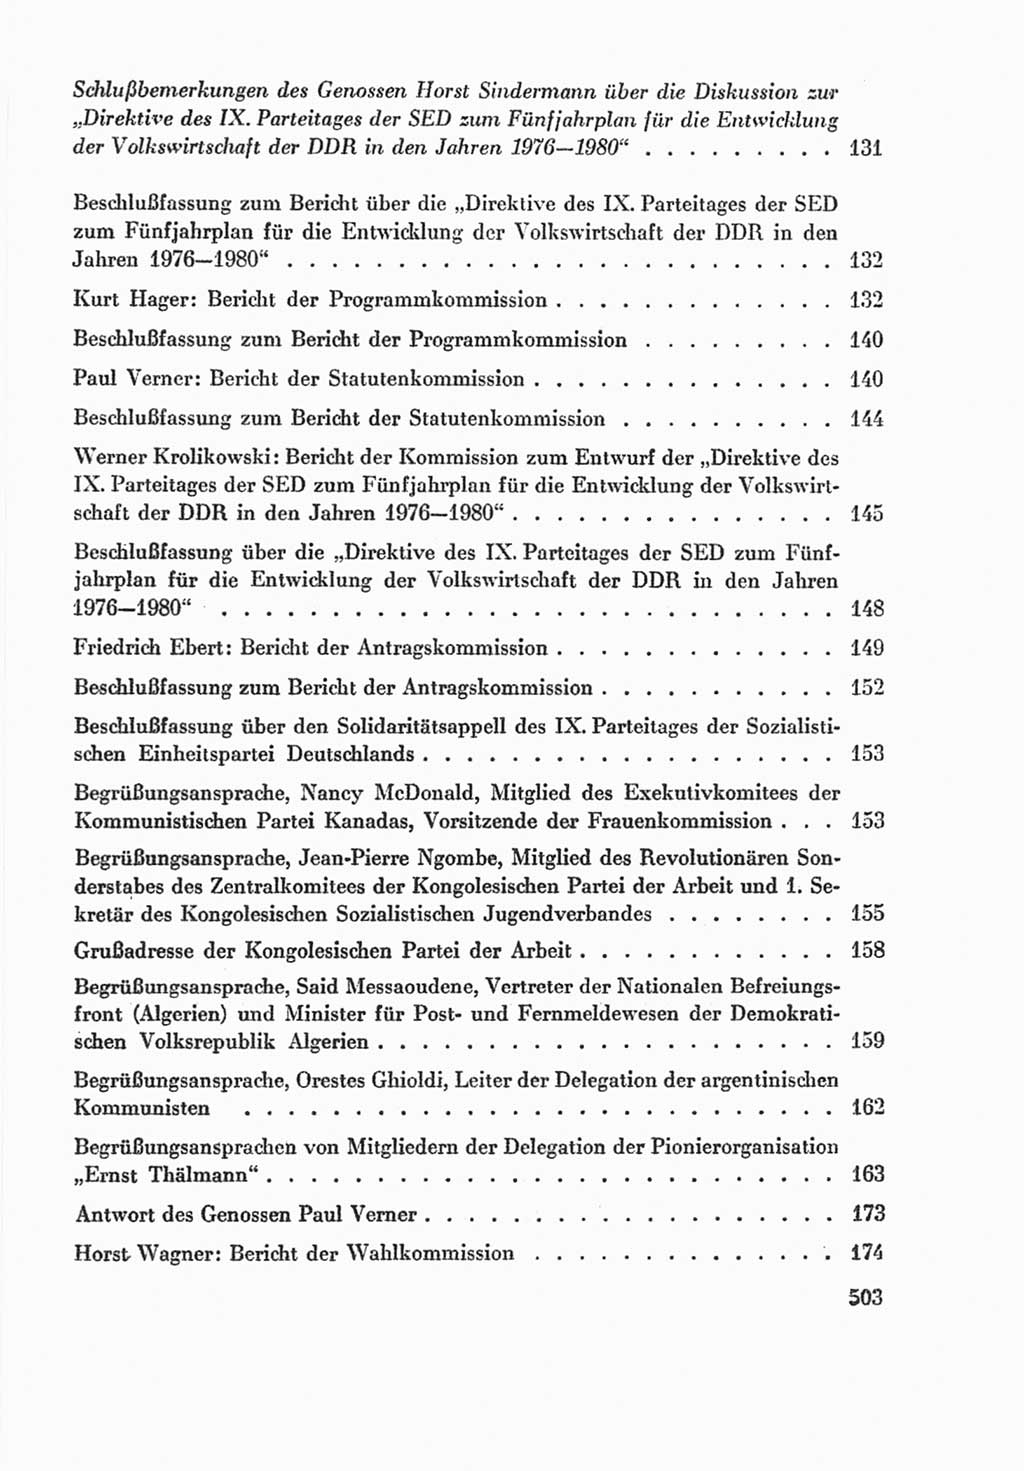 Protokoll der Verhandlungen des Ⅸ. Parteitages der Sozialistischen Einheitspartei Deutschlands (SED) [Deutsche Demokratische Republik (DDR)] 1976, Band 2, Seite 503 (Prot. Verh. Ⅸ. PT SED DDR 1976, Bd. 2, S. 503)